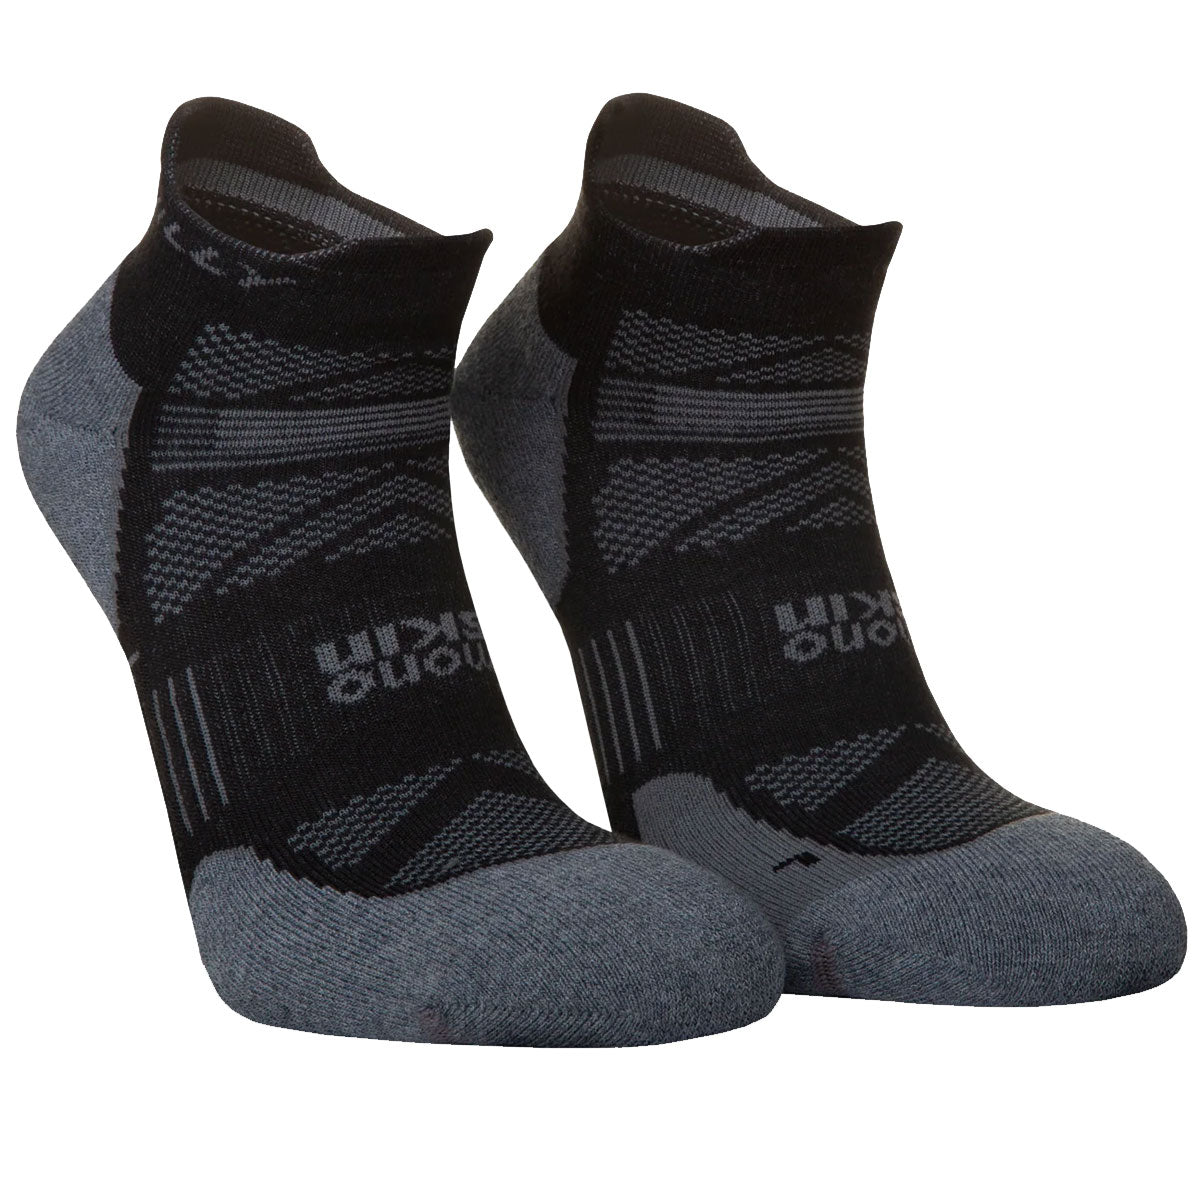 Hilly Supreme Anklet Med Socks - Mens - Black/Grey Marl